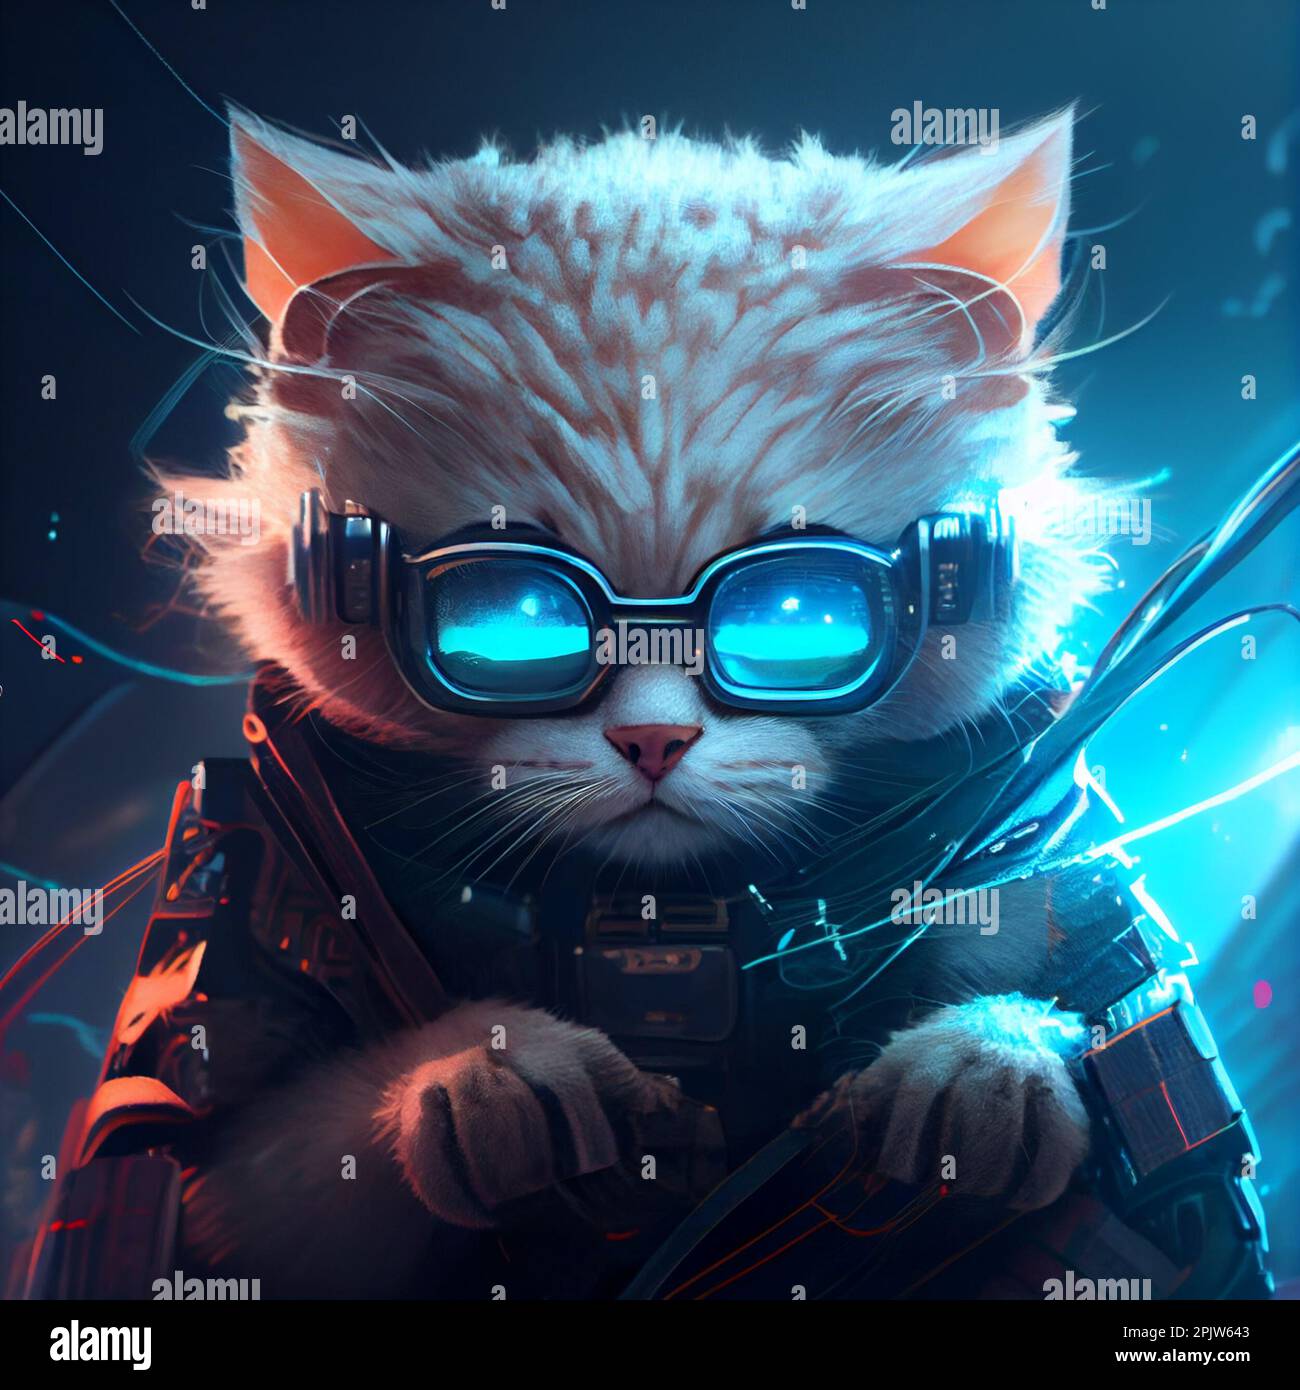 Hacker futurista moderno del gato en gafas del juego del vr para el juego de ordenador y la realidad virtual. Ilustración de los vidrios frescos del animal doméstico peludo VR An